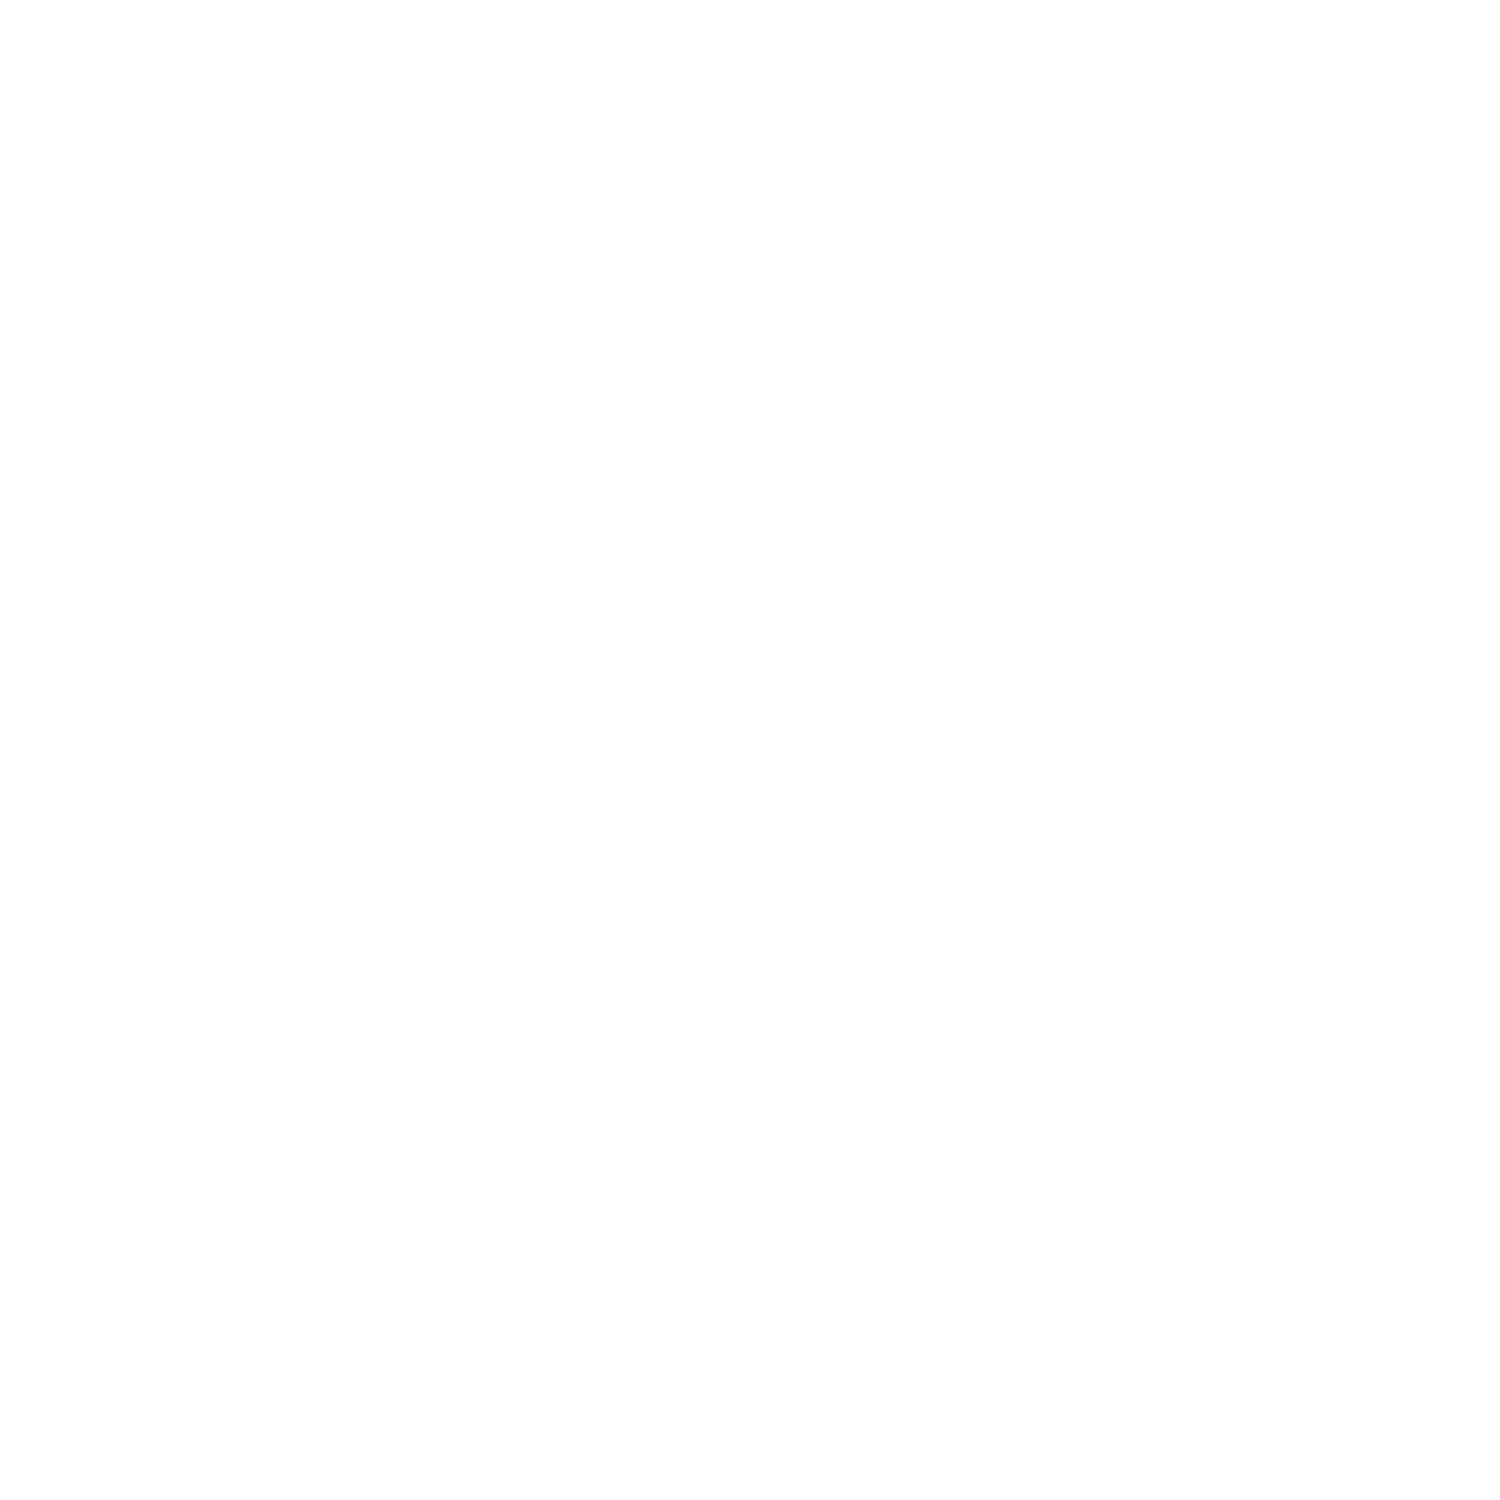 Maui Design Studio